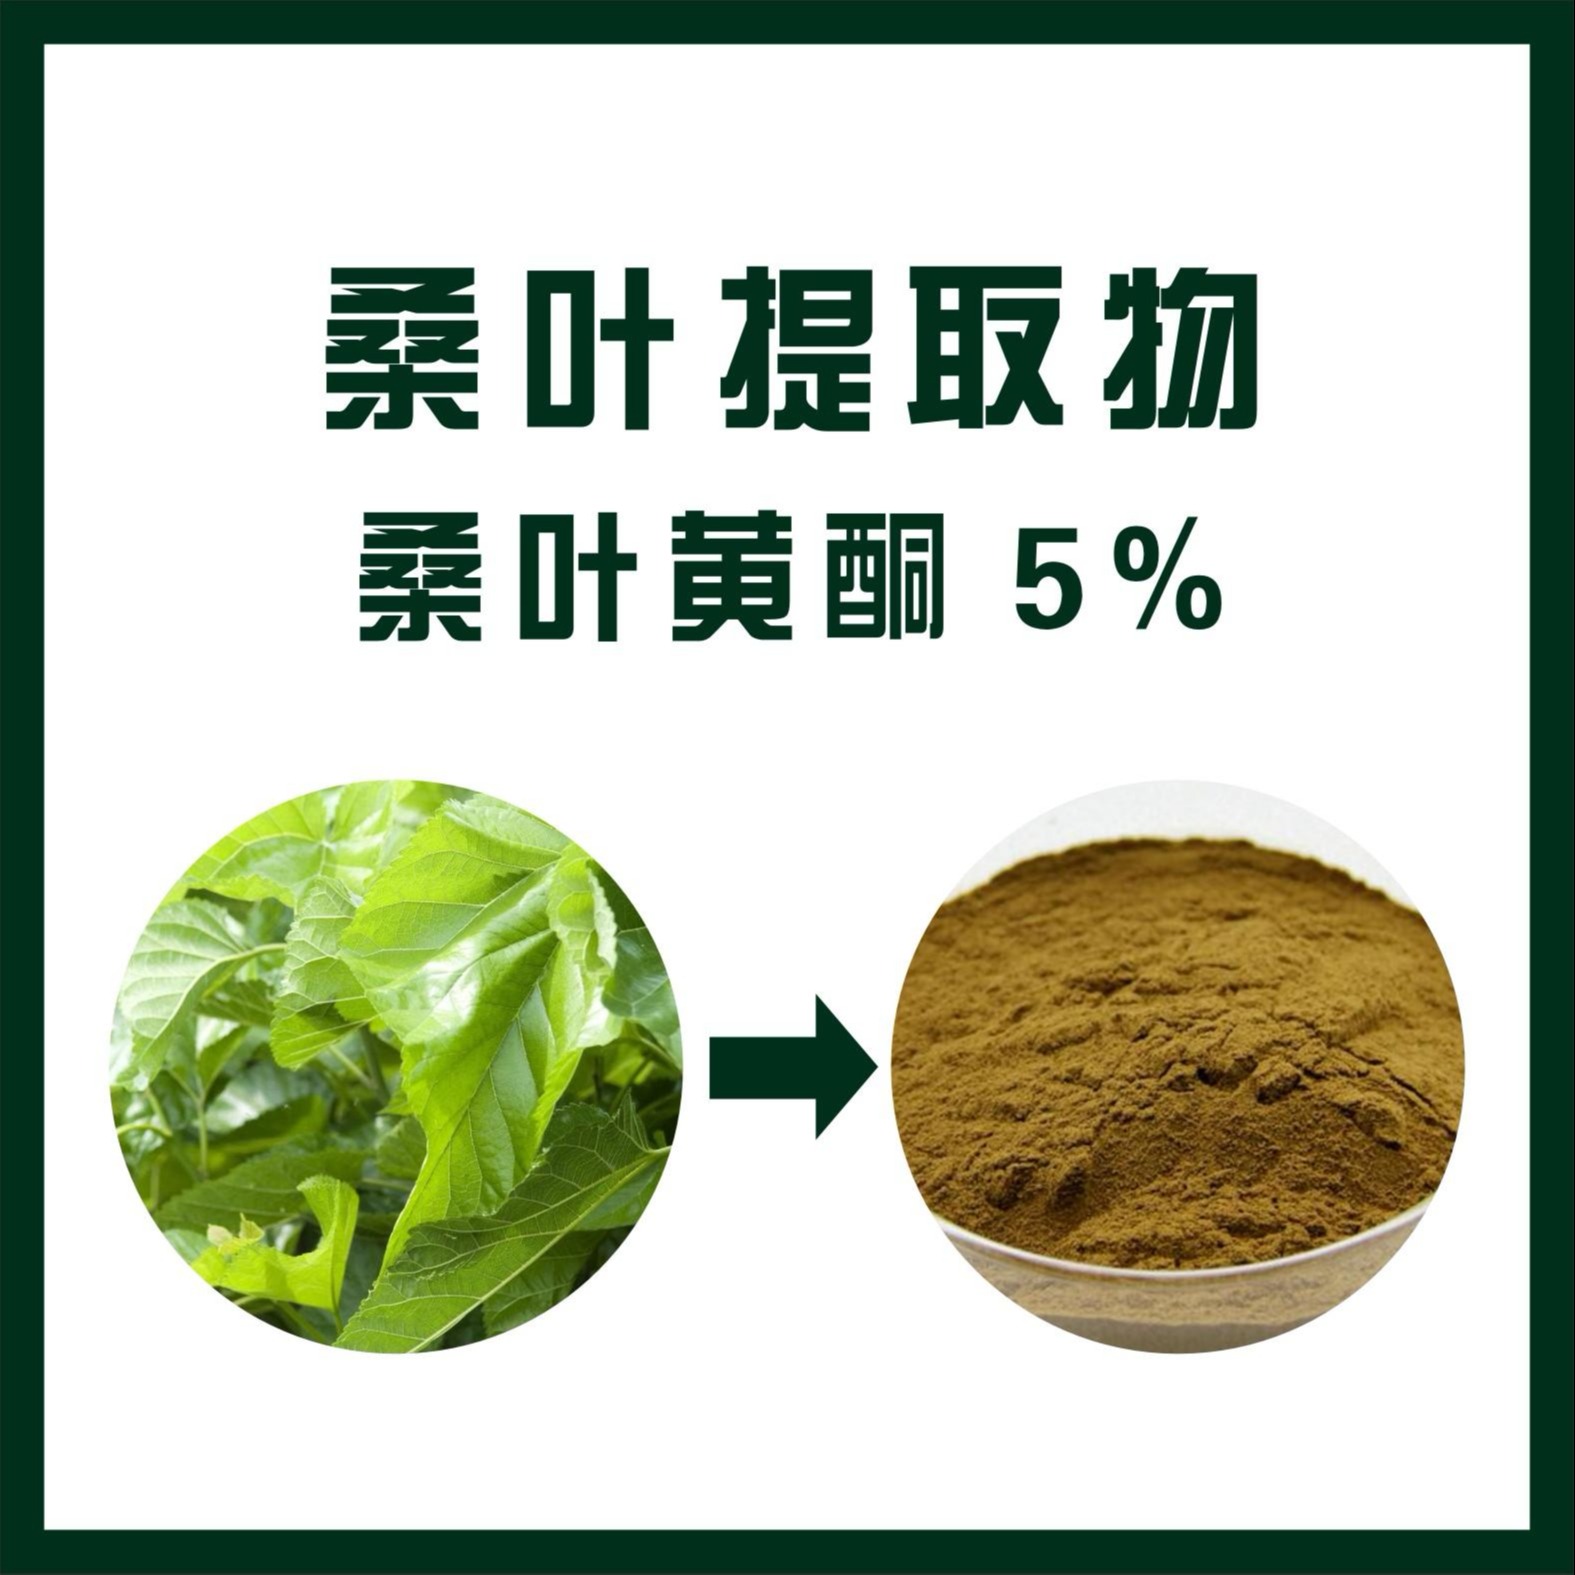 桑叶黄酮5% 桑叶提取物 纯植物提取 质量保证 三原天域生物生产厂家